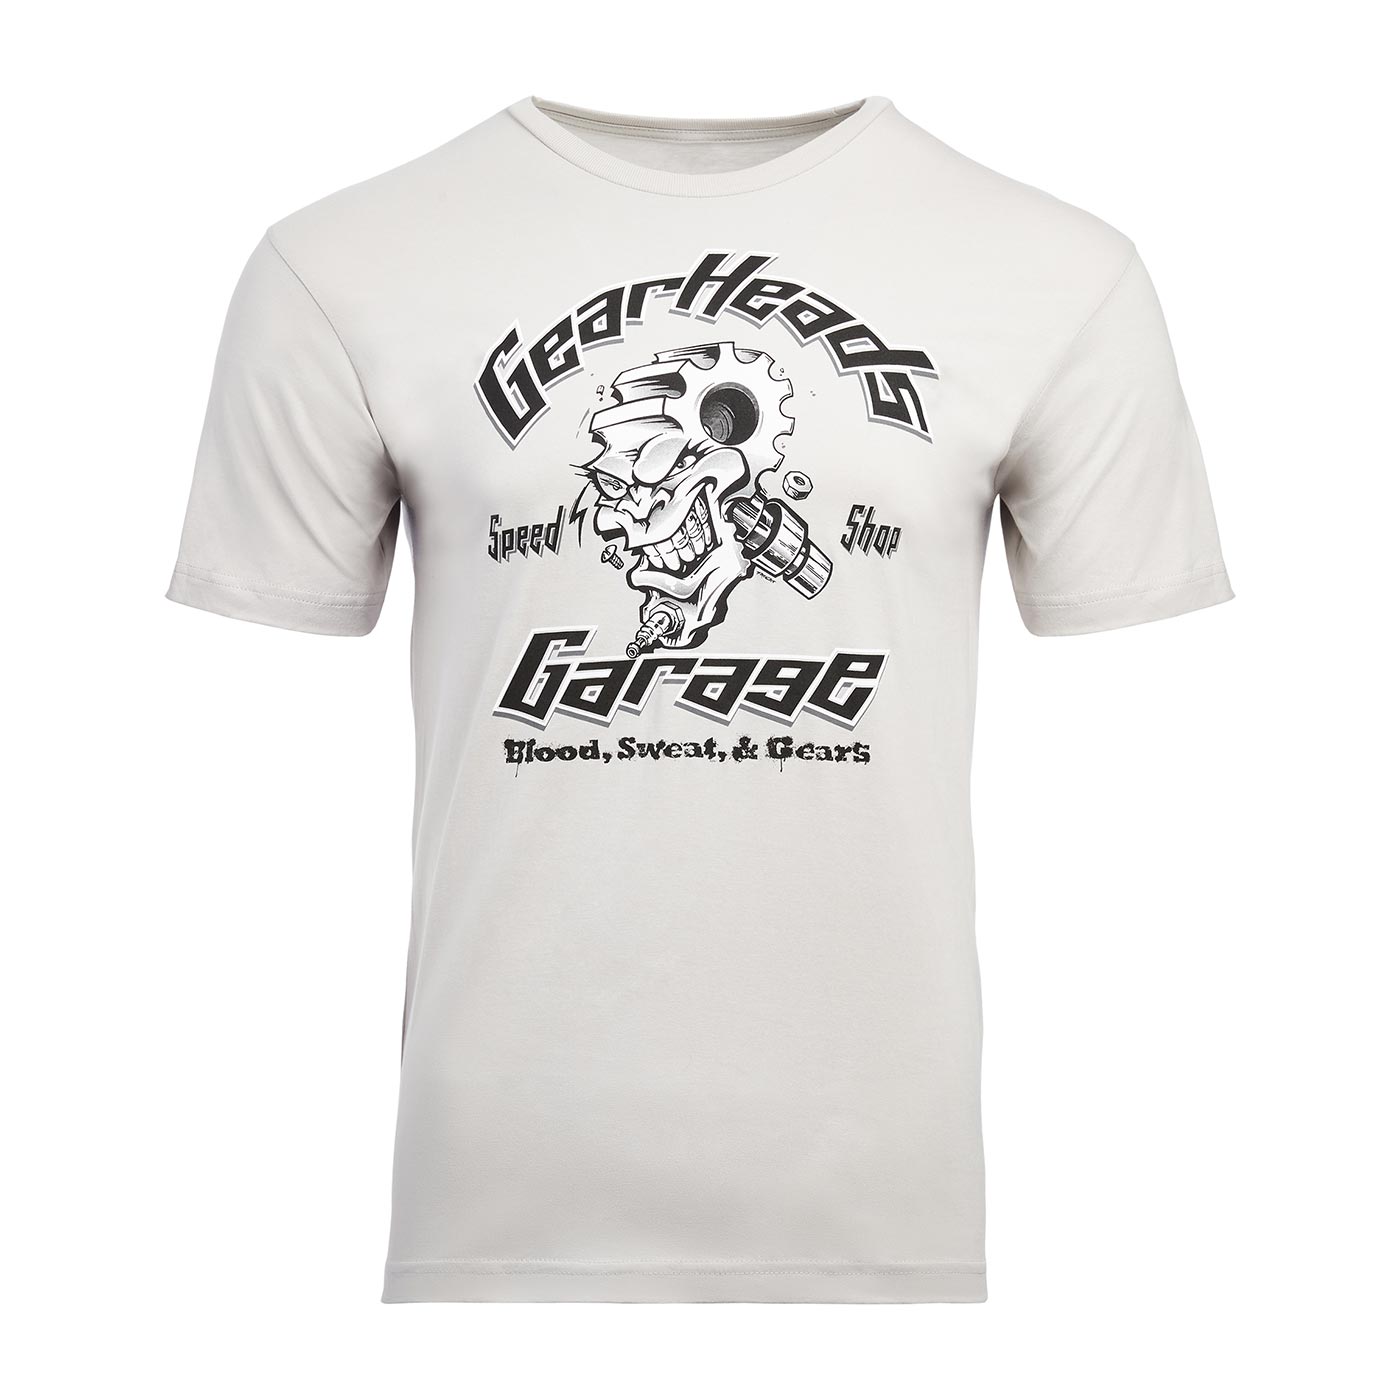 Gear Head Speed Shop short sleeve t-shirt